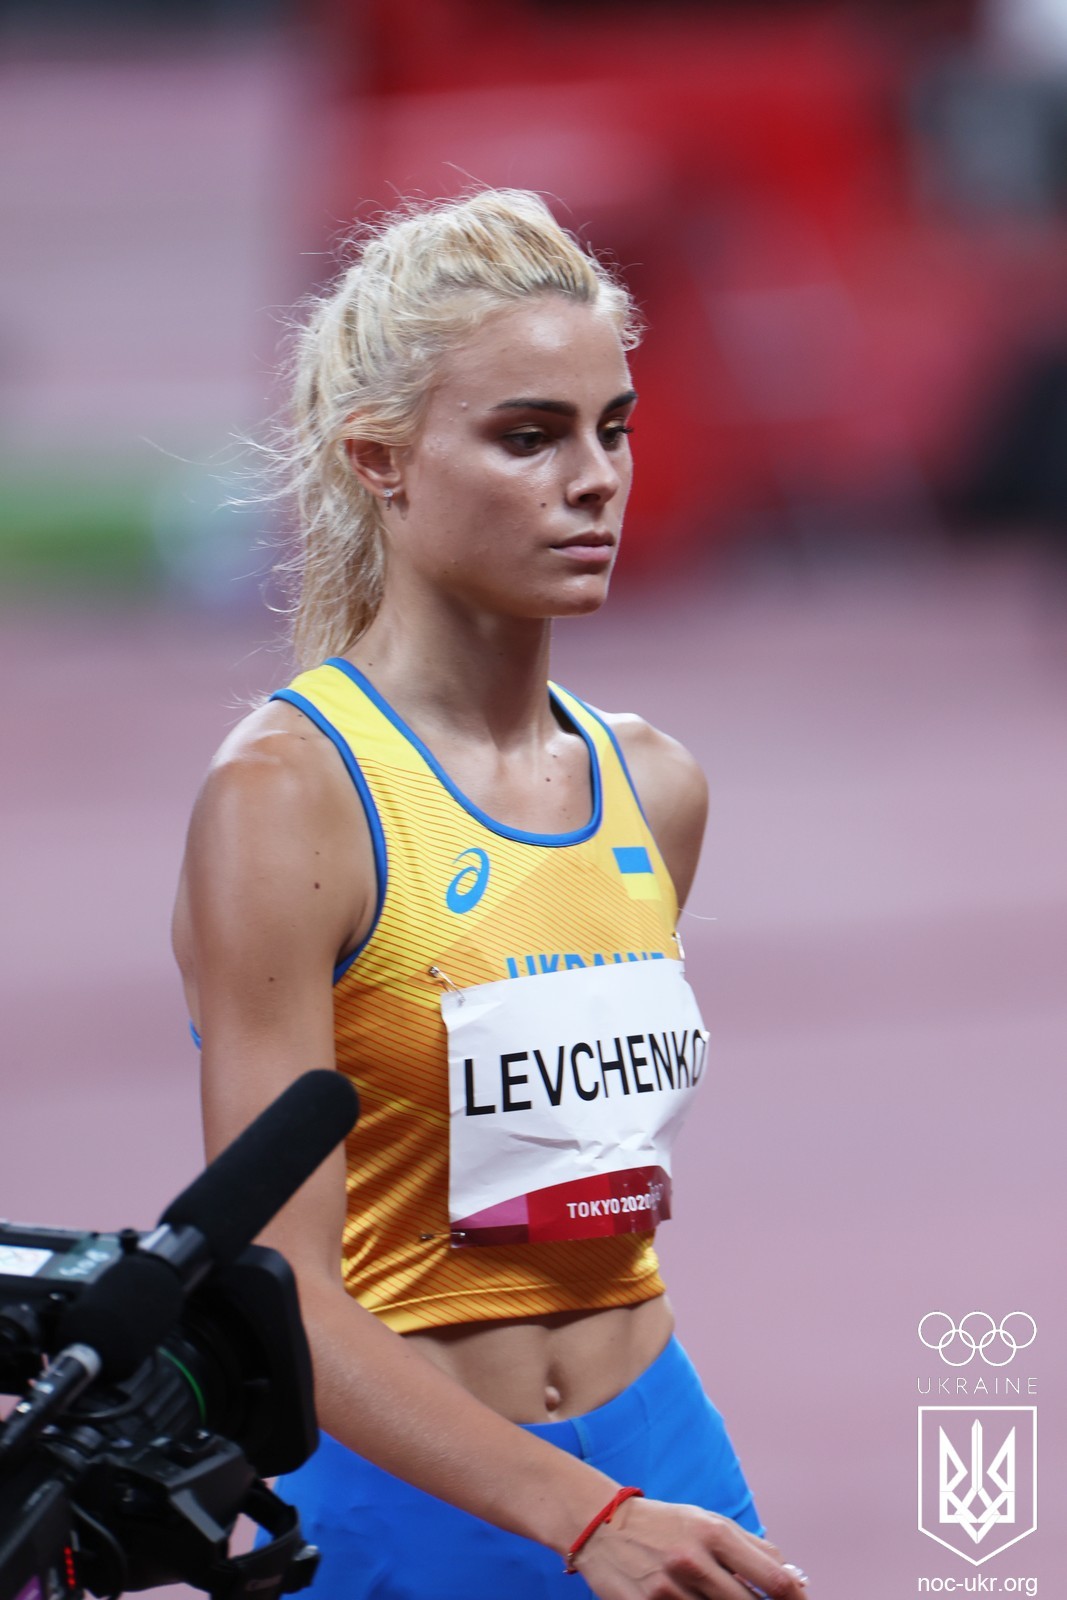 Levchenko